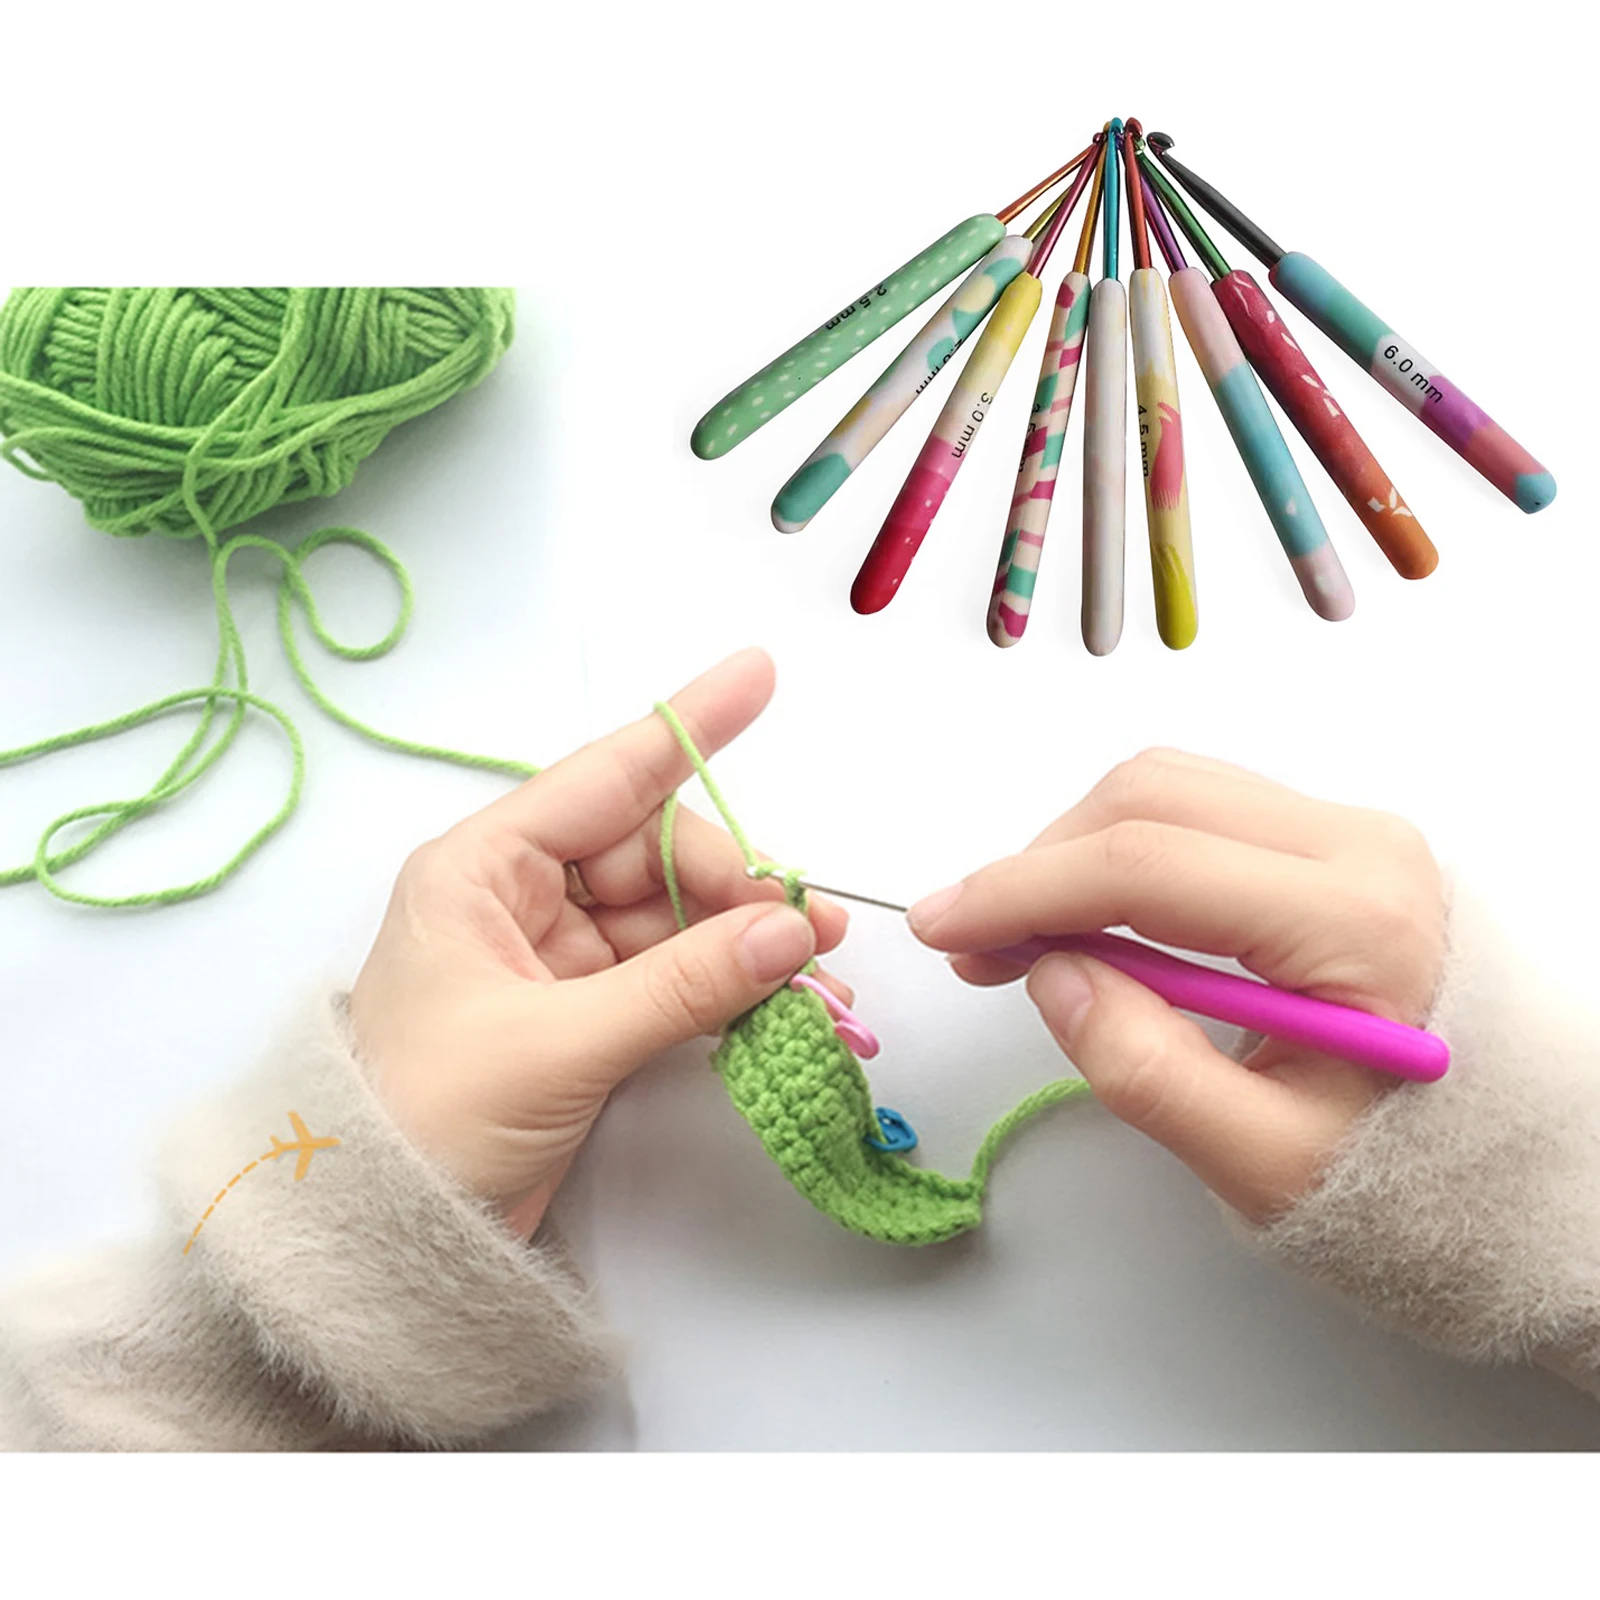 Crochet Hooks Set 9Pcs Aluminum Handle Knitting Needles Crocheting 2-6mm Yarn Craft Knitting Needles for Beginners Women